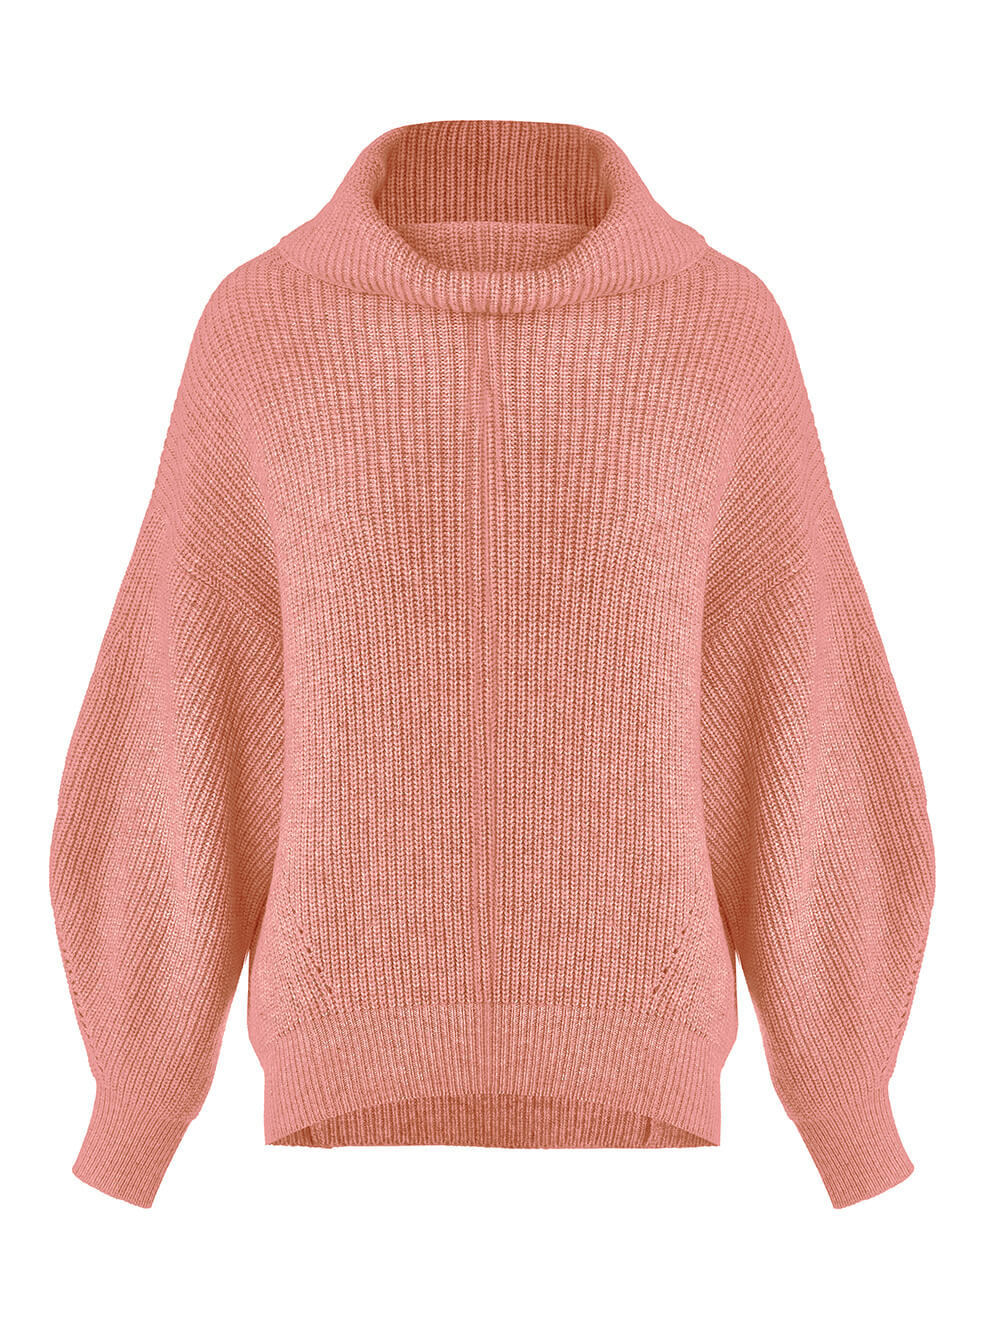 Женский свитер кораллового цвета из шерсти и кашемира - фото 1